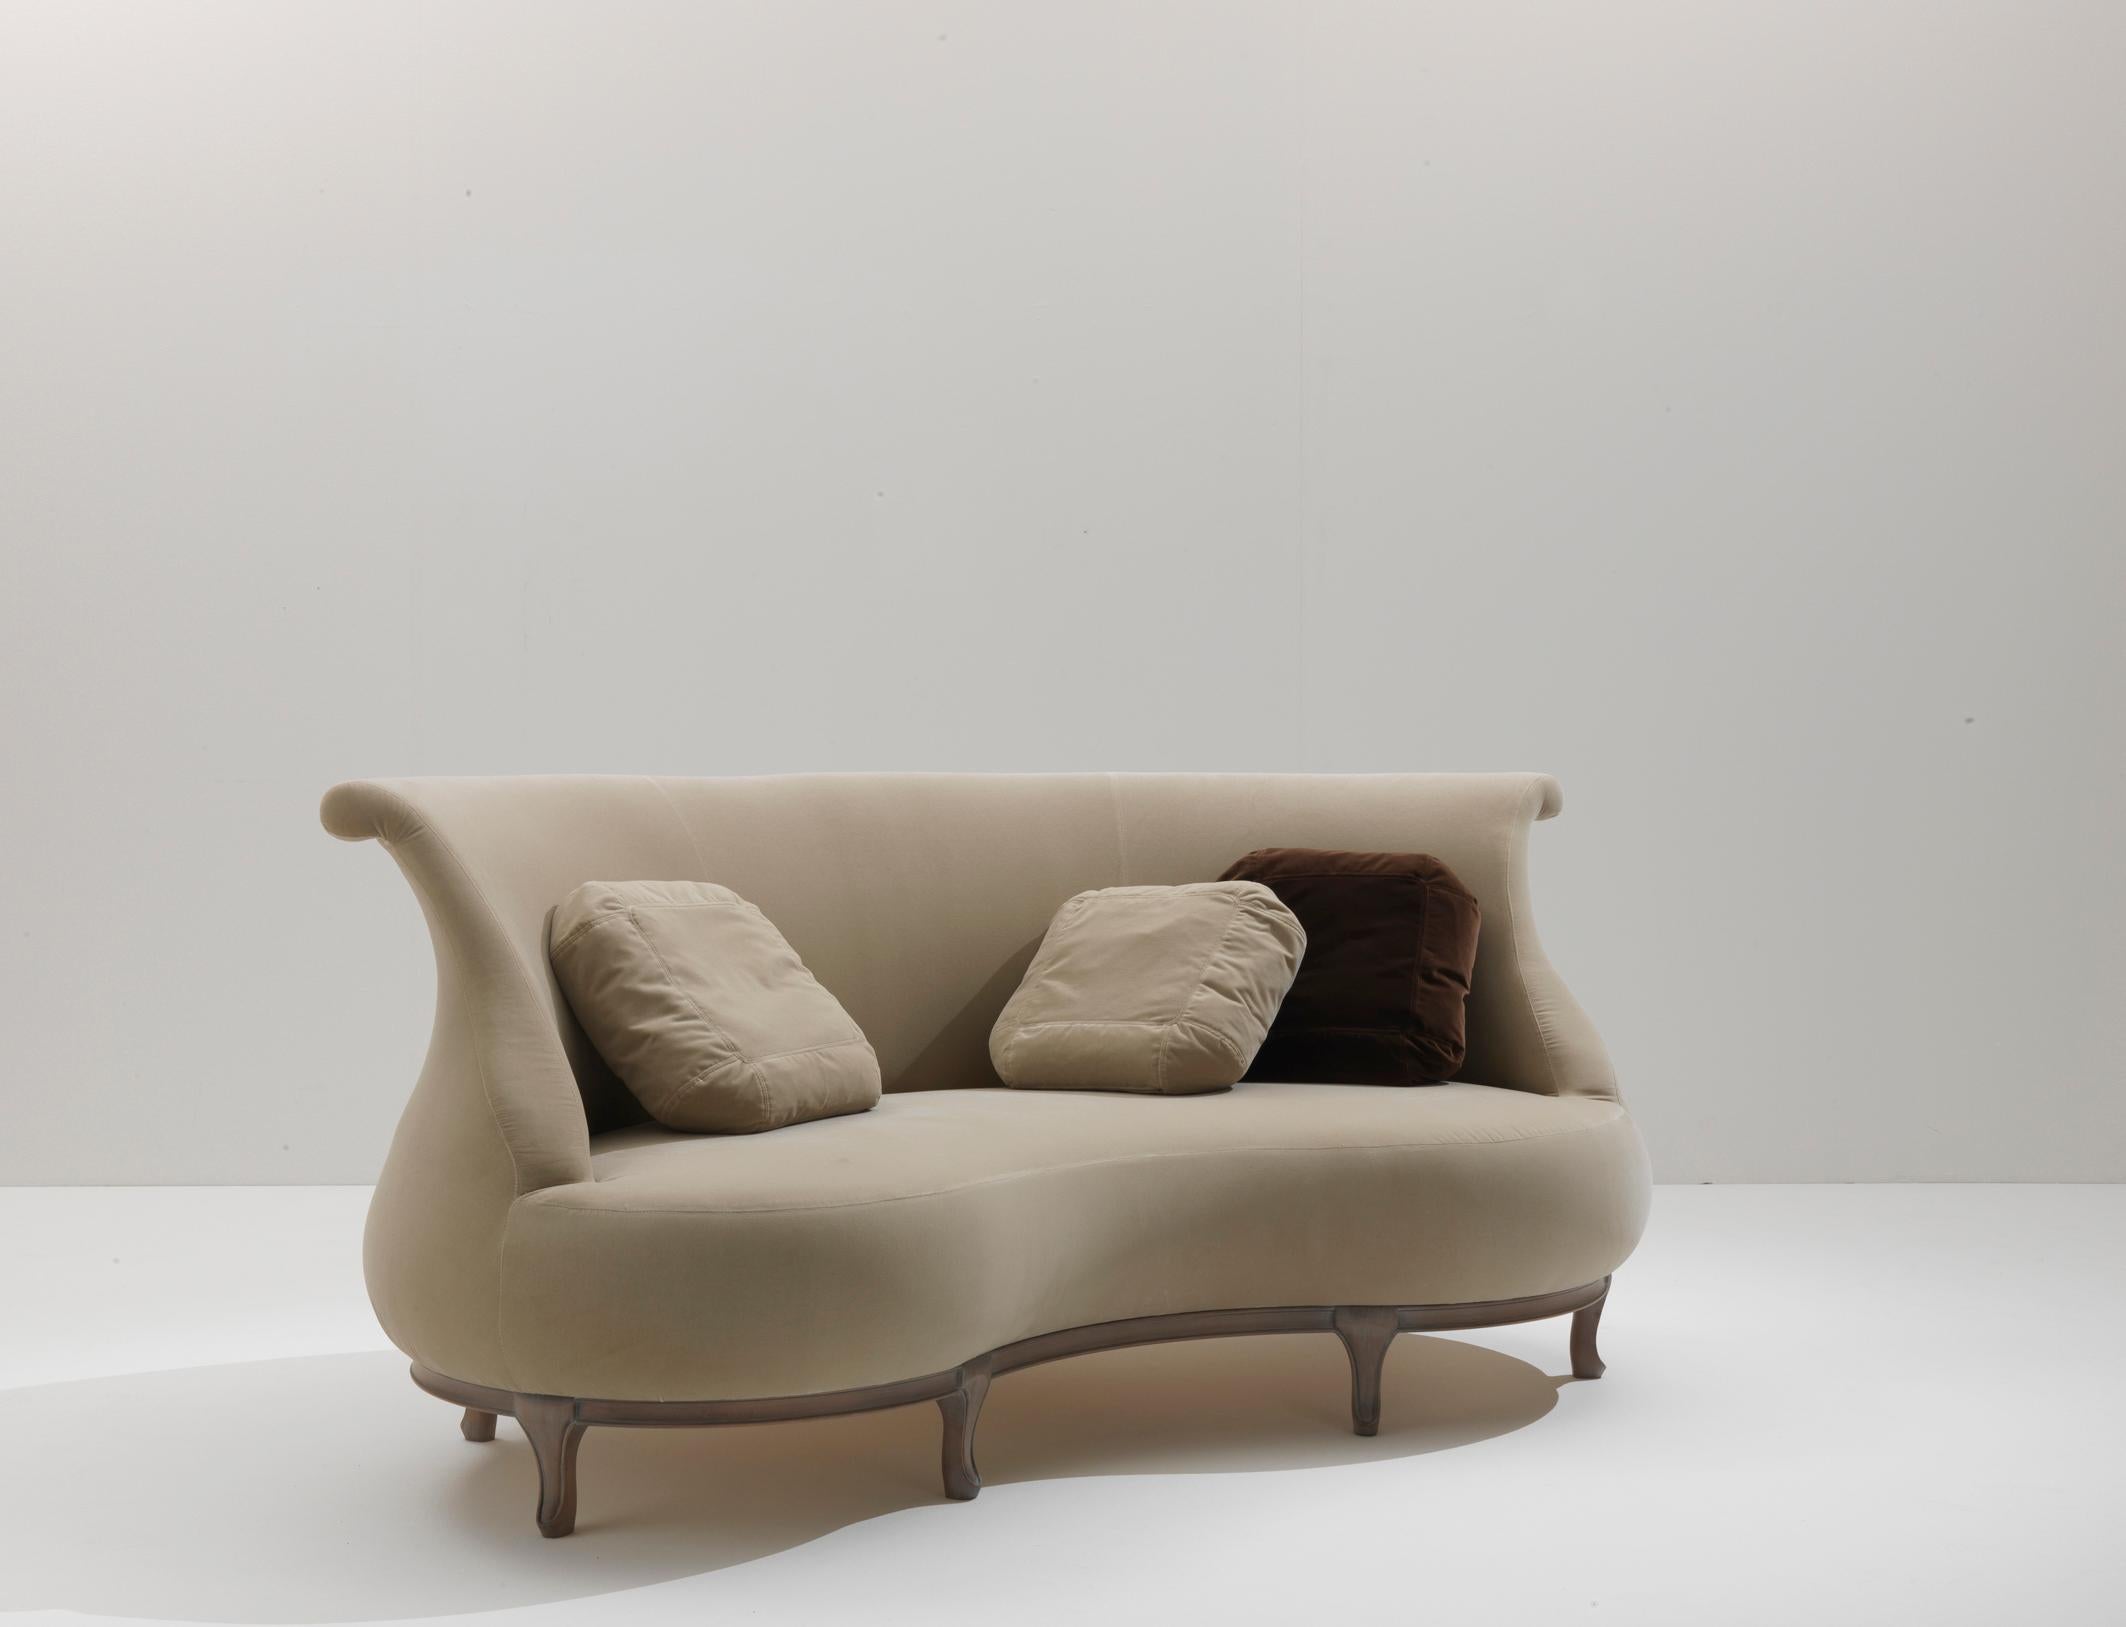 Das Sofa Plump, eine Kreation des renommierten Nigel Coates, lädt Sie in eine Welt anthropomorpher Eleganz und runder Perfektion ein. Sein Design bietet einen weichen und bequemen Sitz, der zum Entspannen einlädt.

Dieses einzigartige Sofa zeichnet